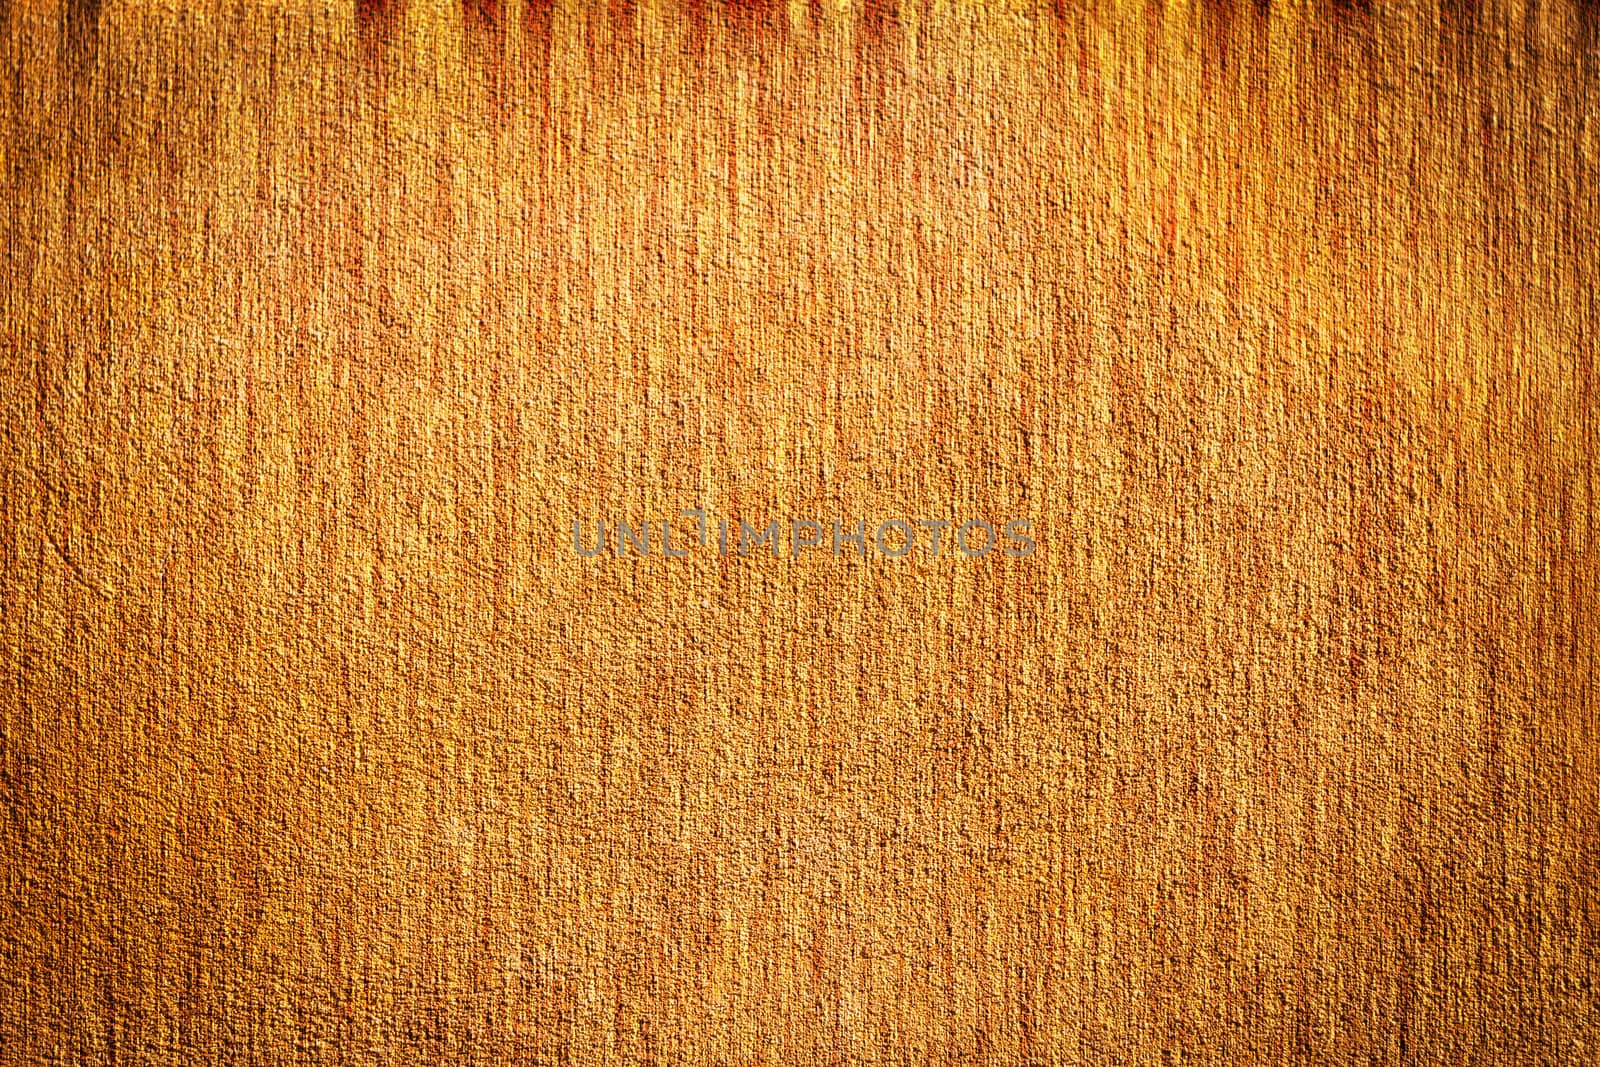 Grunge dark orange plaster wall background fiber texture